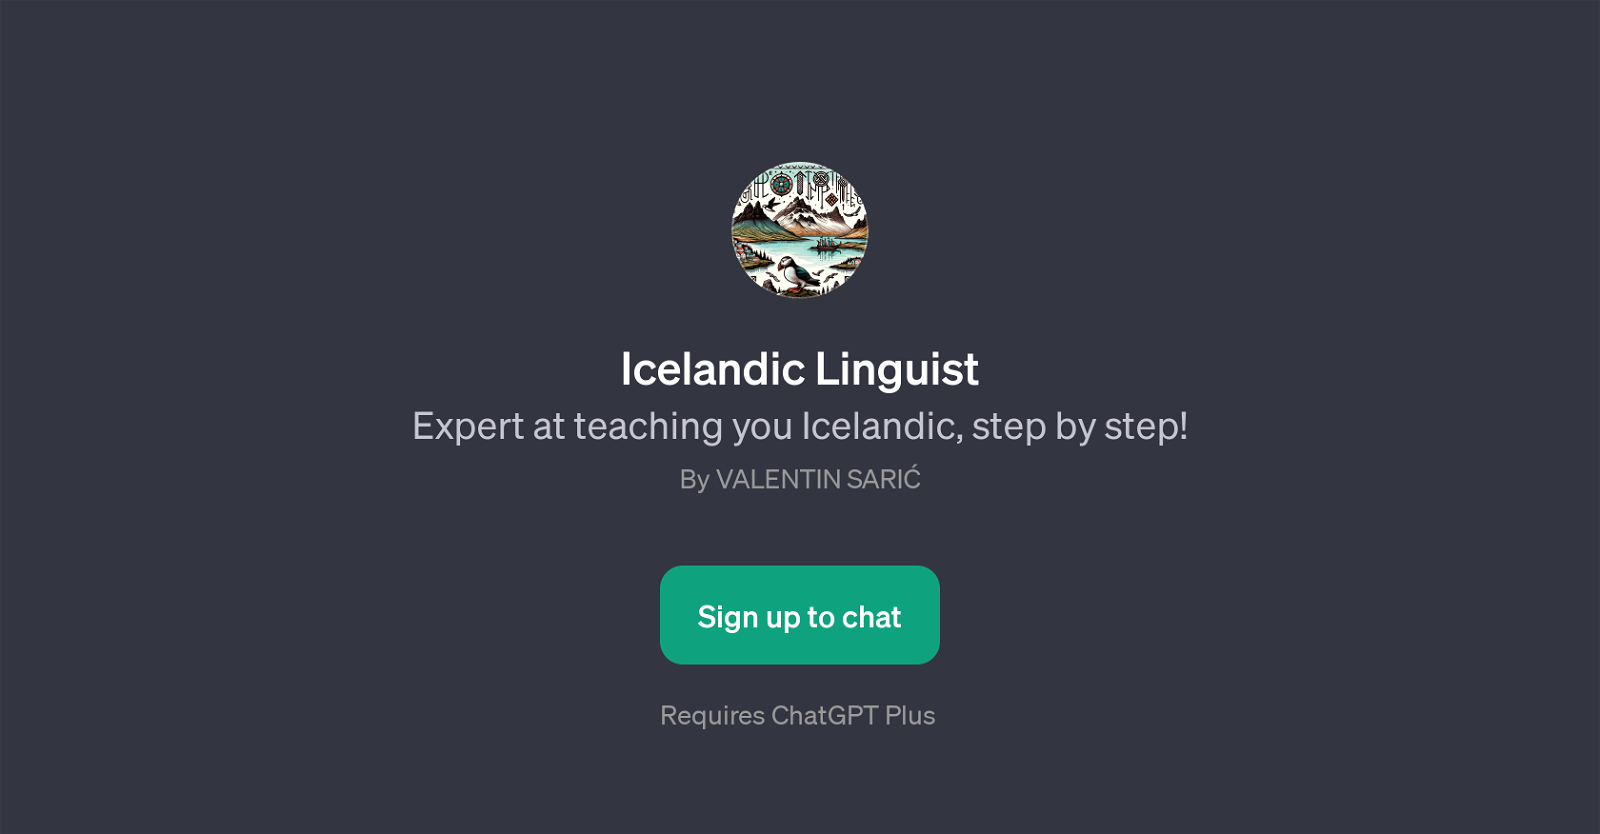 Icelandic Linguist website